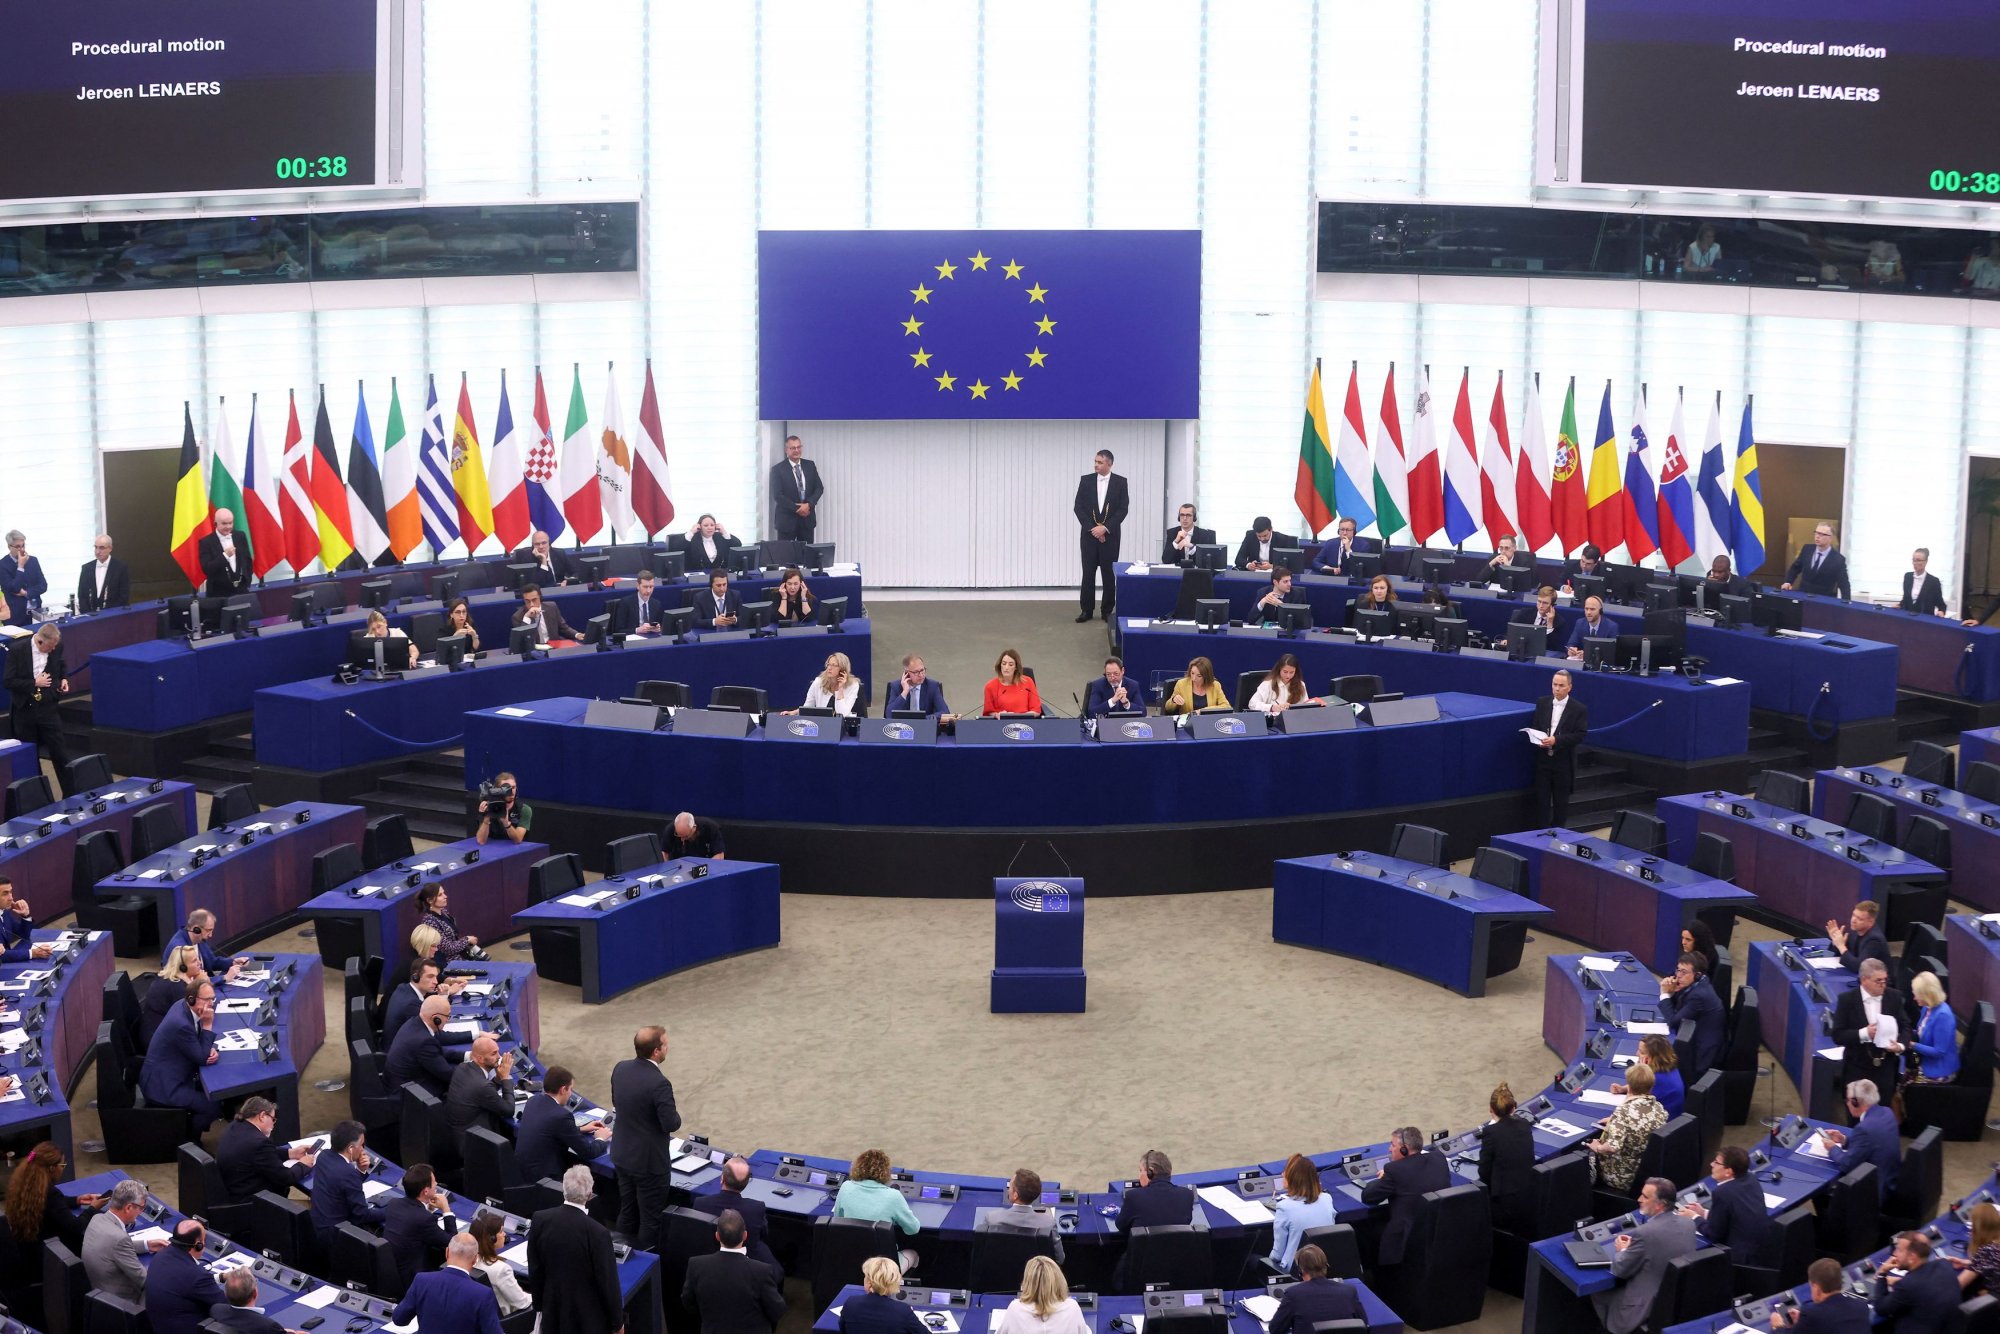 Ούρσουλα φον ντερ Λάιεν: Σε εξέλιξη η ψηφοφορία στο Ευρωπαϊκό Κοινοβούλιο – Θα εκλεγεί ξανά πρόεδρος της ΕΕ;